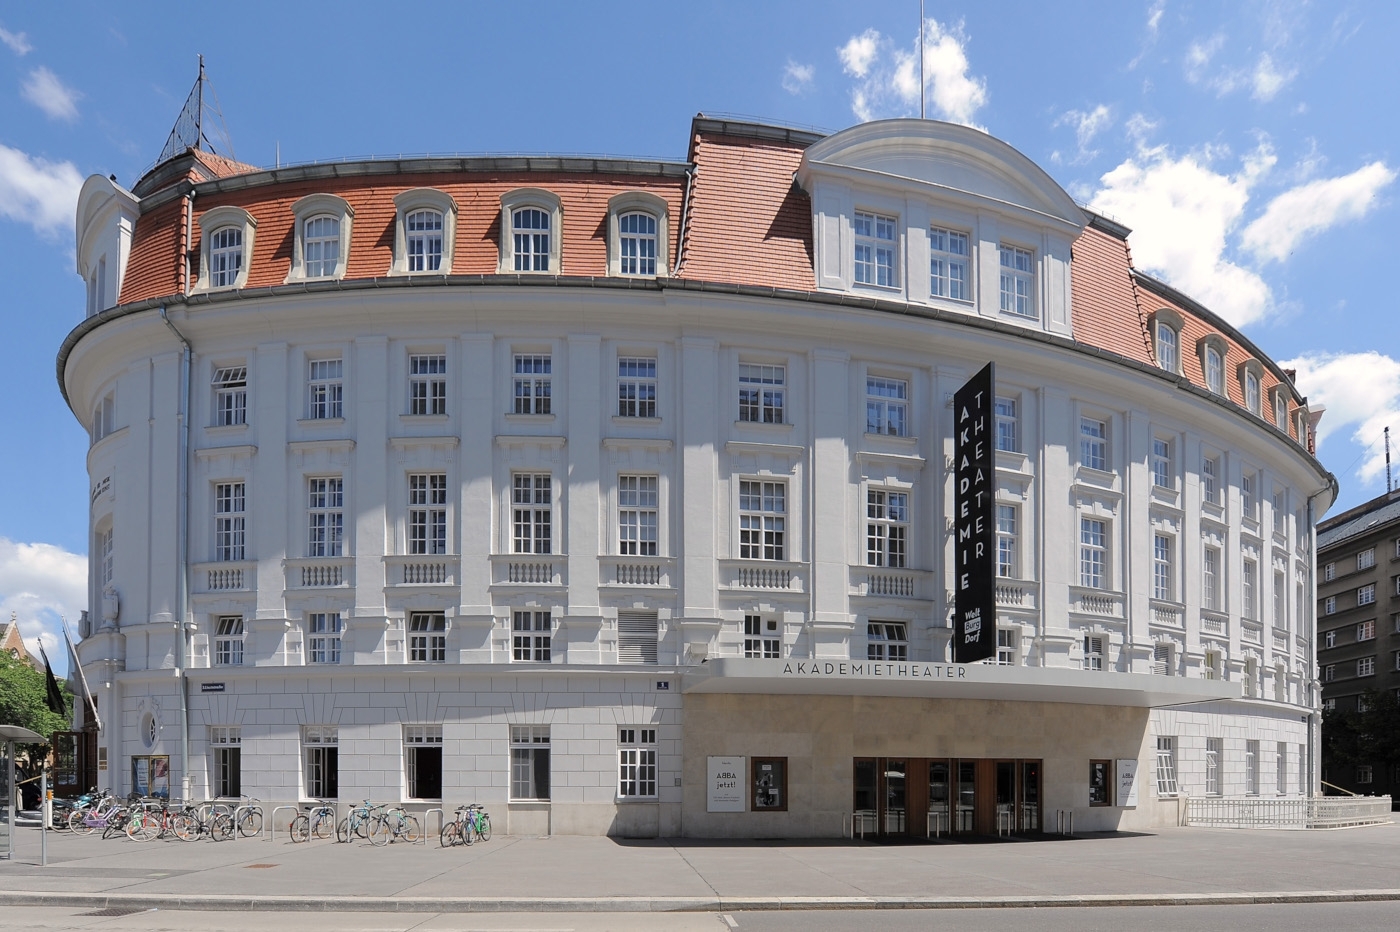 WT Spielstätte Akademietheater © Reinhard Werner/Burghtheater